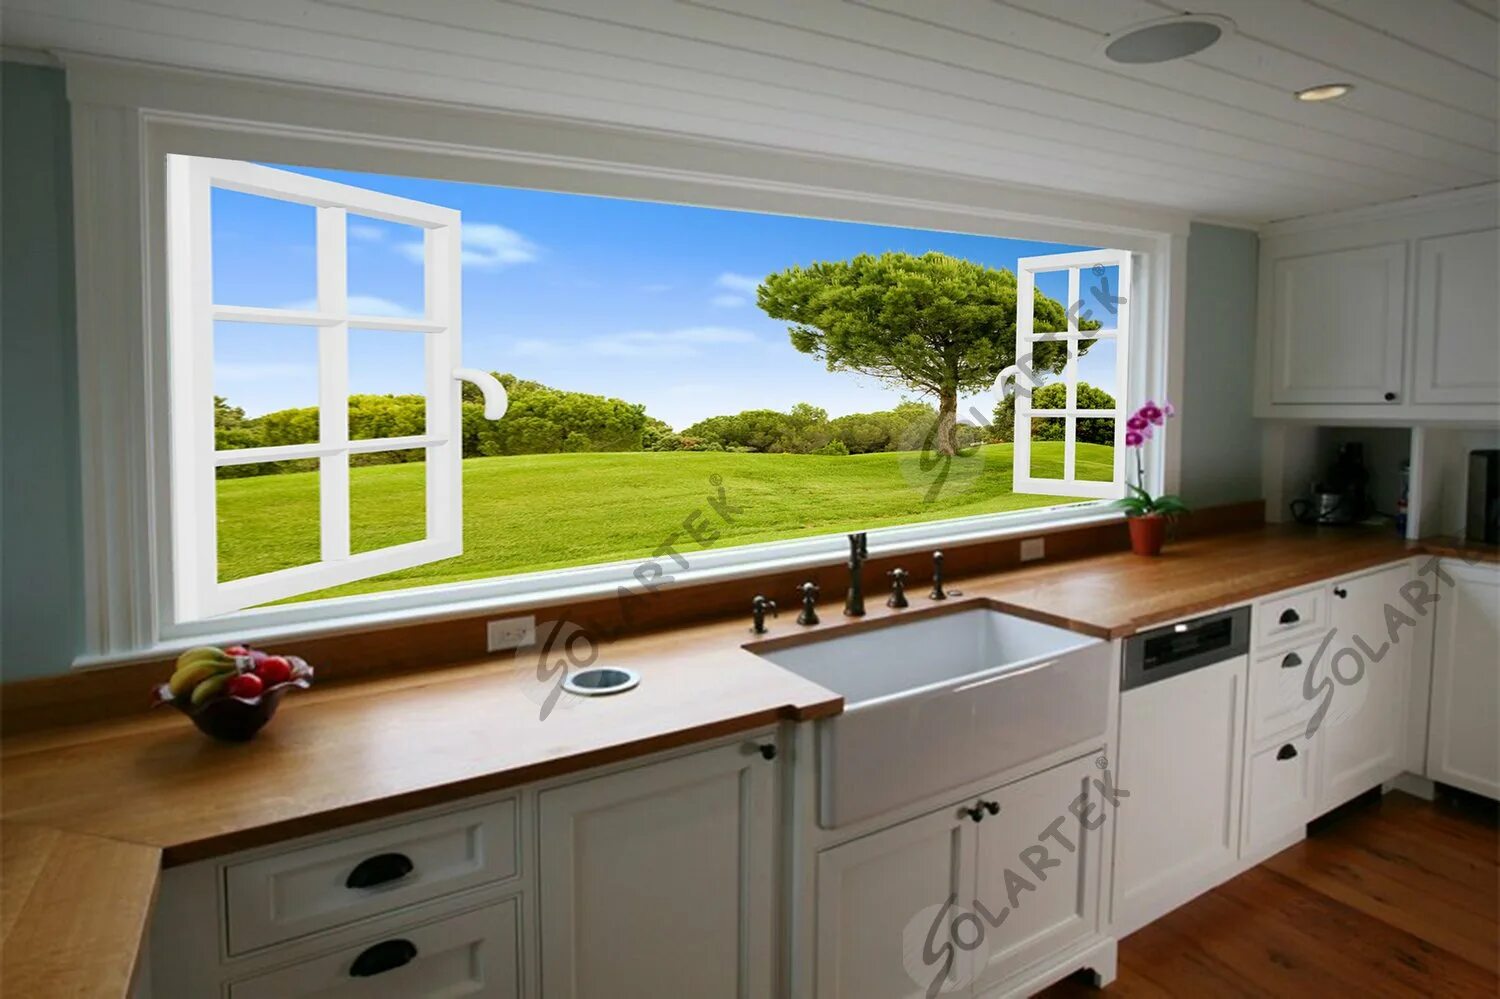 Окно на полный экран. Кухня с окном. Кухня с большим окном. Кухня с окном в рабочей зоне. Окно фартук на кухне.